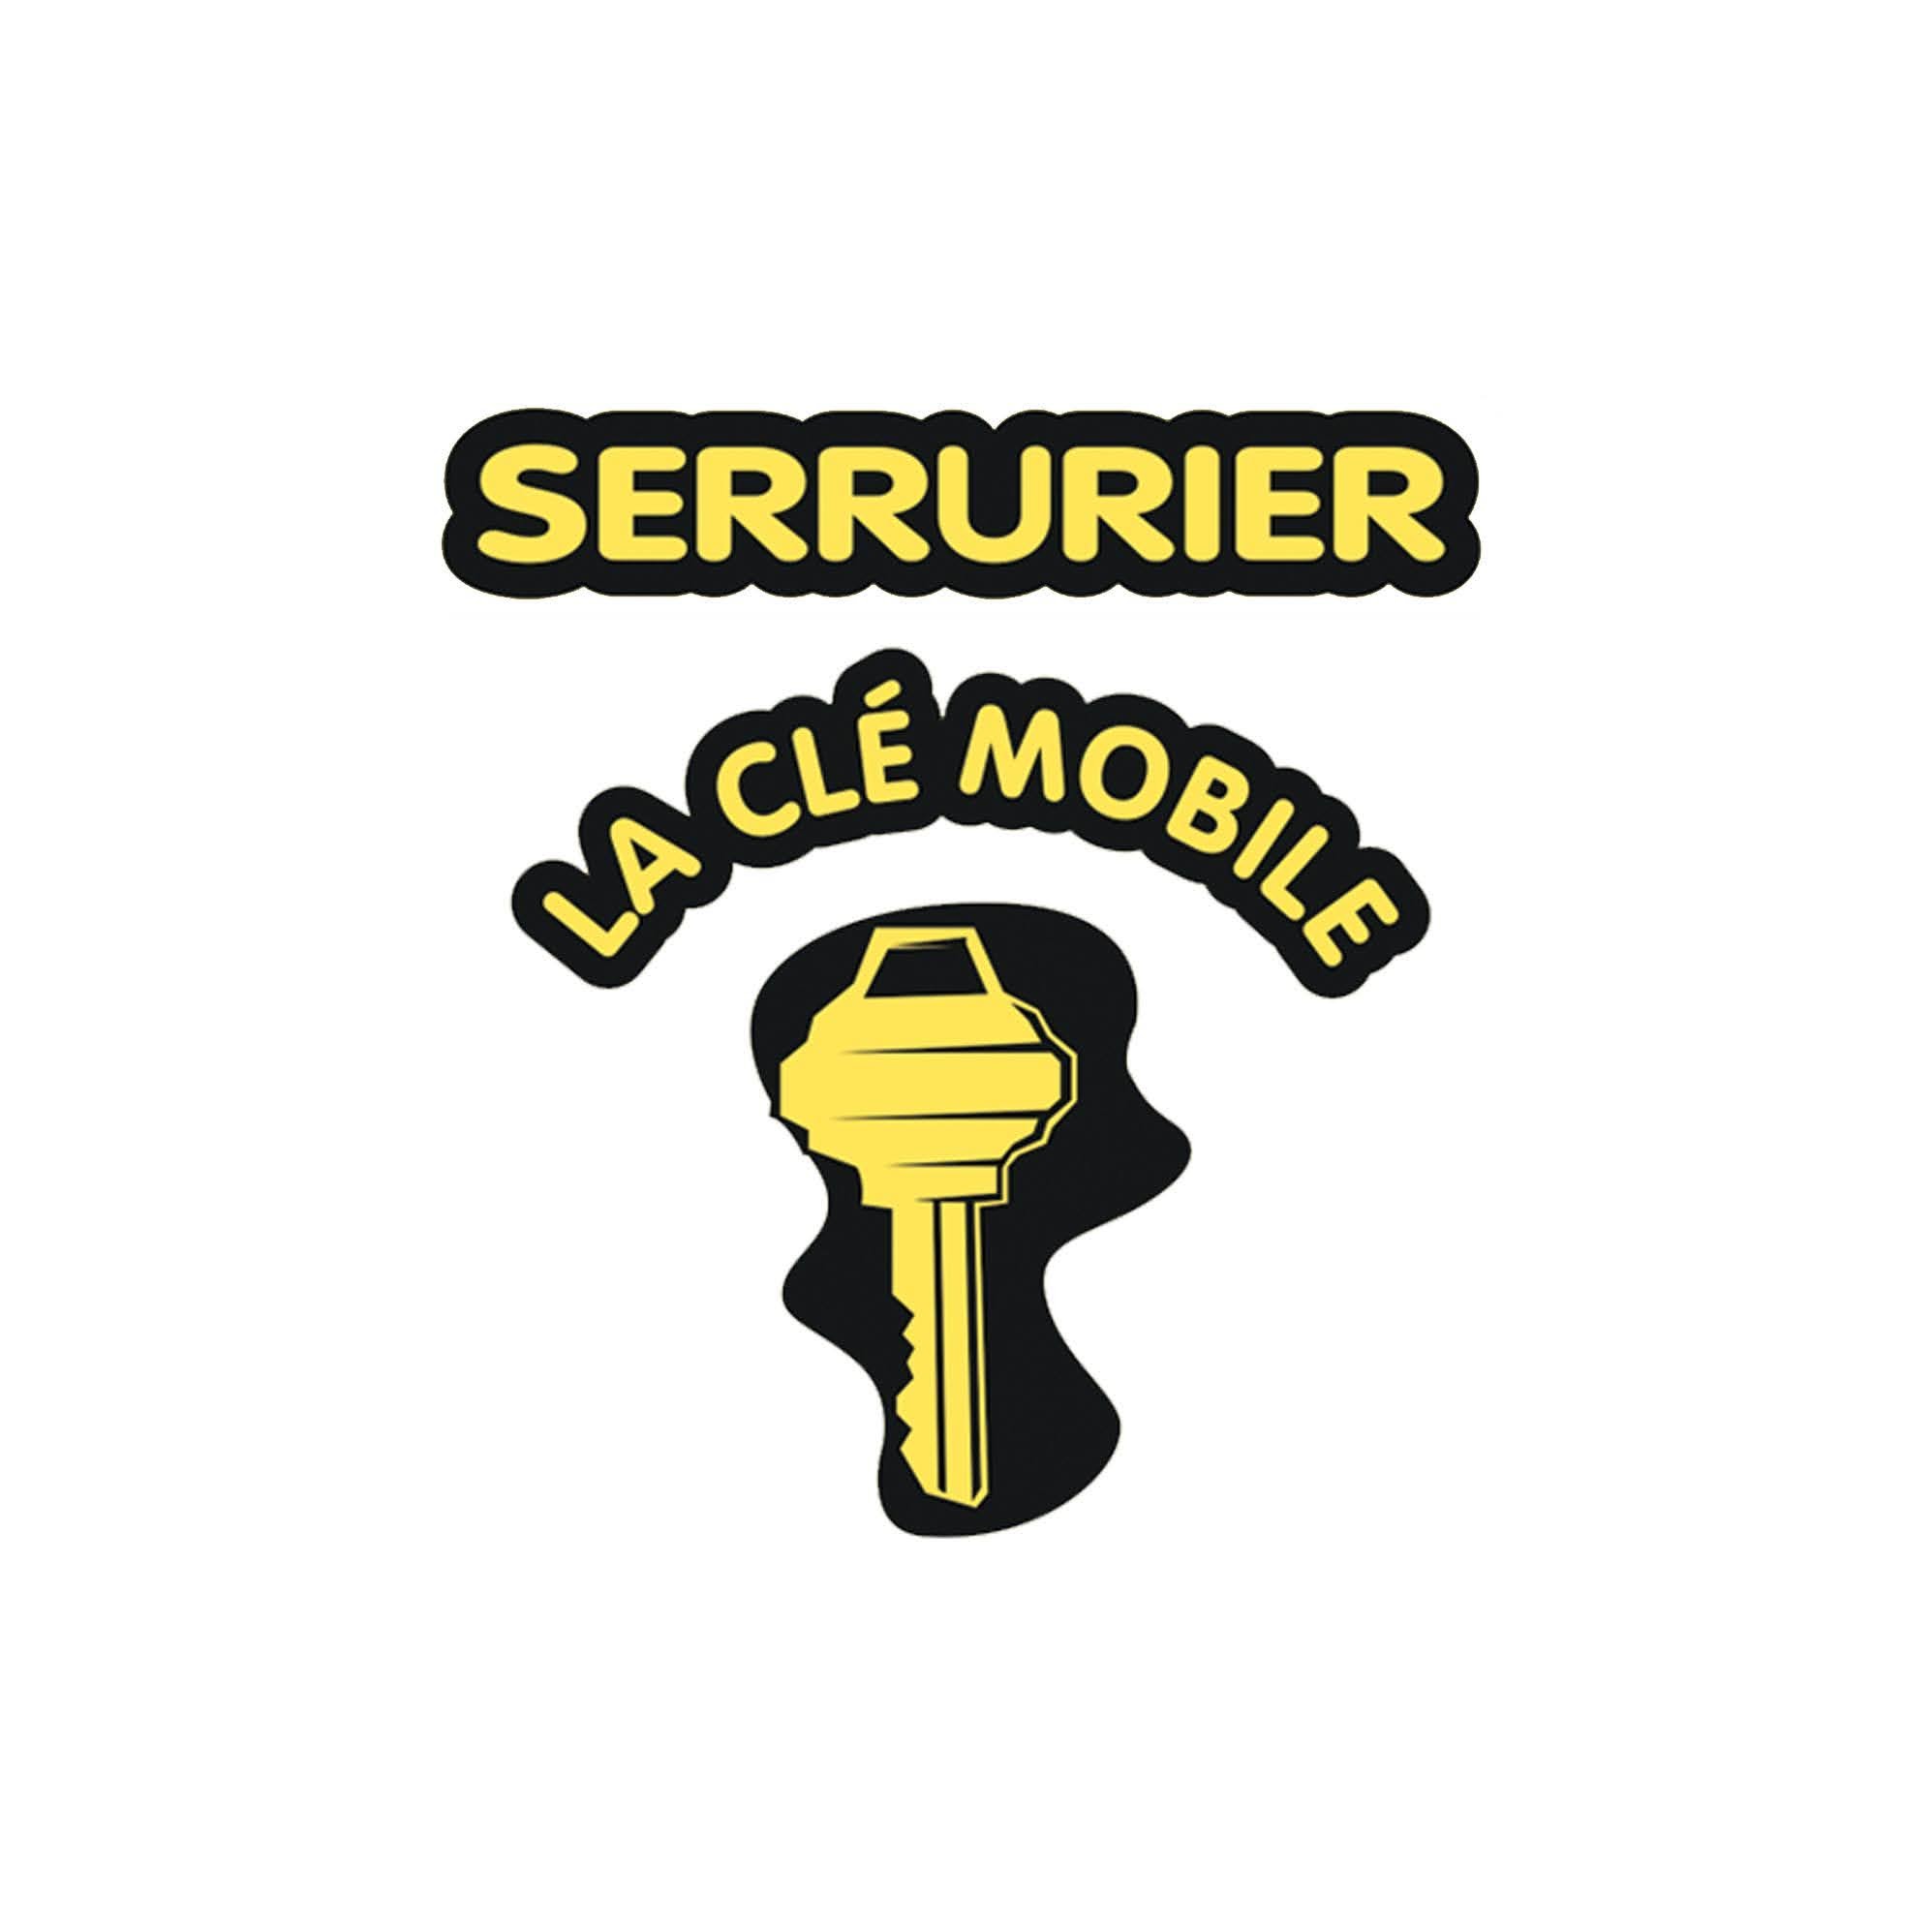 Serrurier La Clé Mobile Ste-Julie in Sainte-Julie